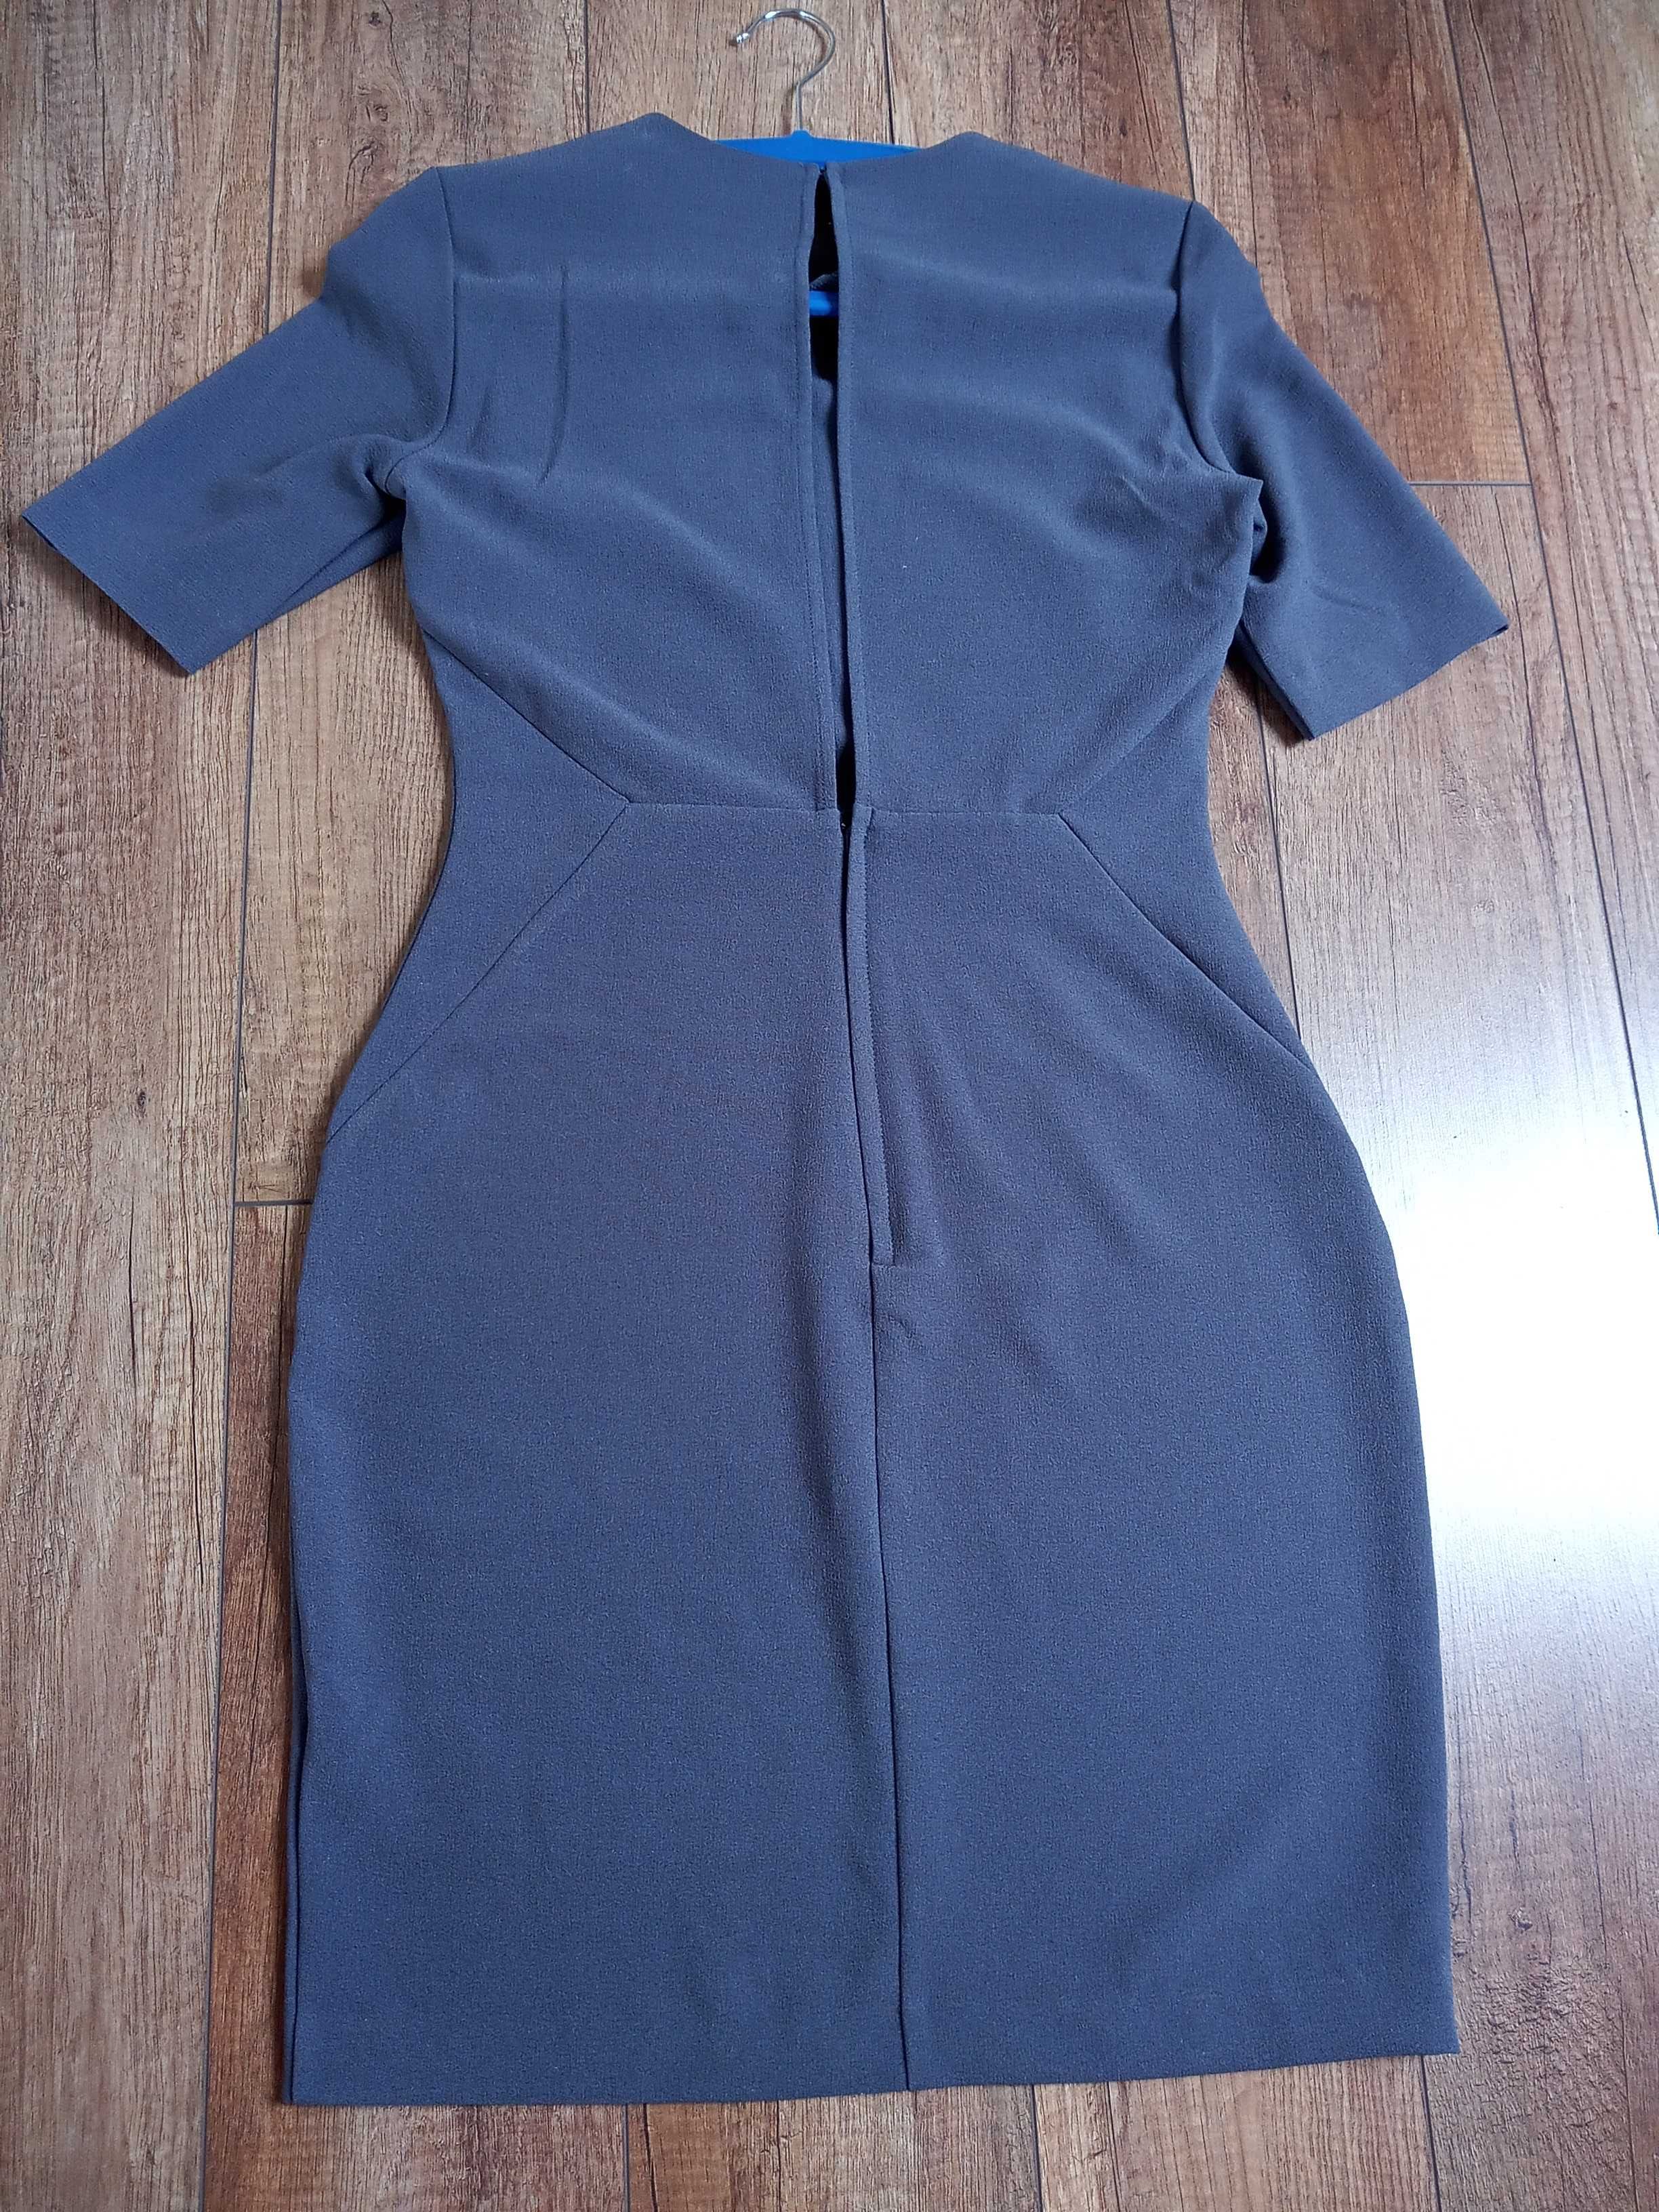 elegancka sukienka szara H&M 38 krótka rozcięcie na plecach